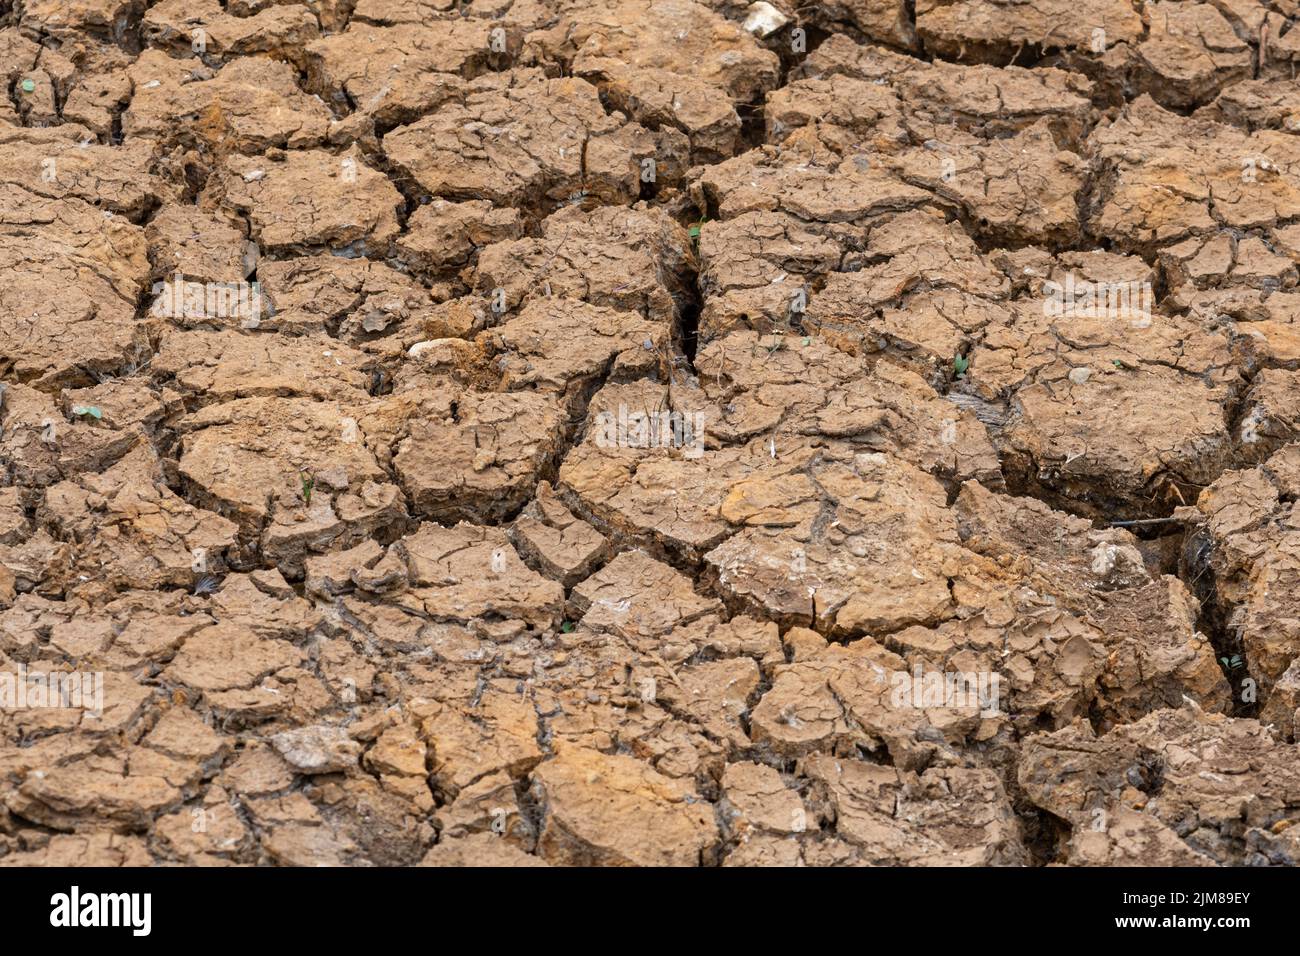 Étang séché, terre craquée, pendant la sécheresse de l'été 2022, Hampshire, Angleterre, Royaume-Uni Banque D'Images